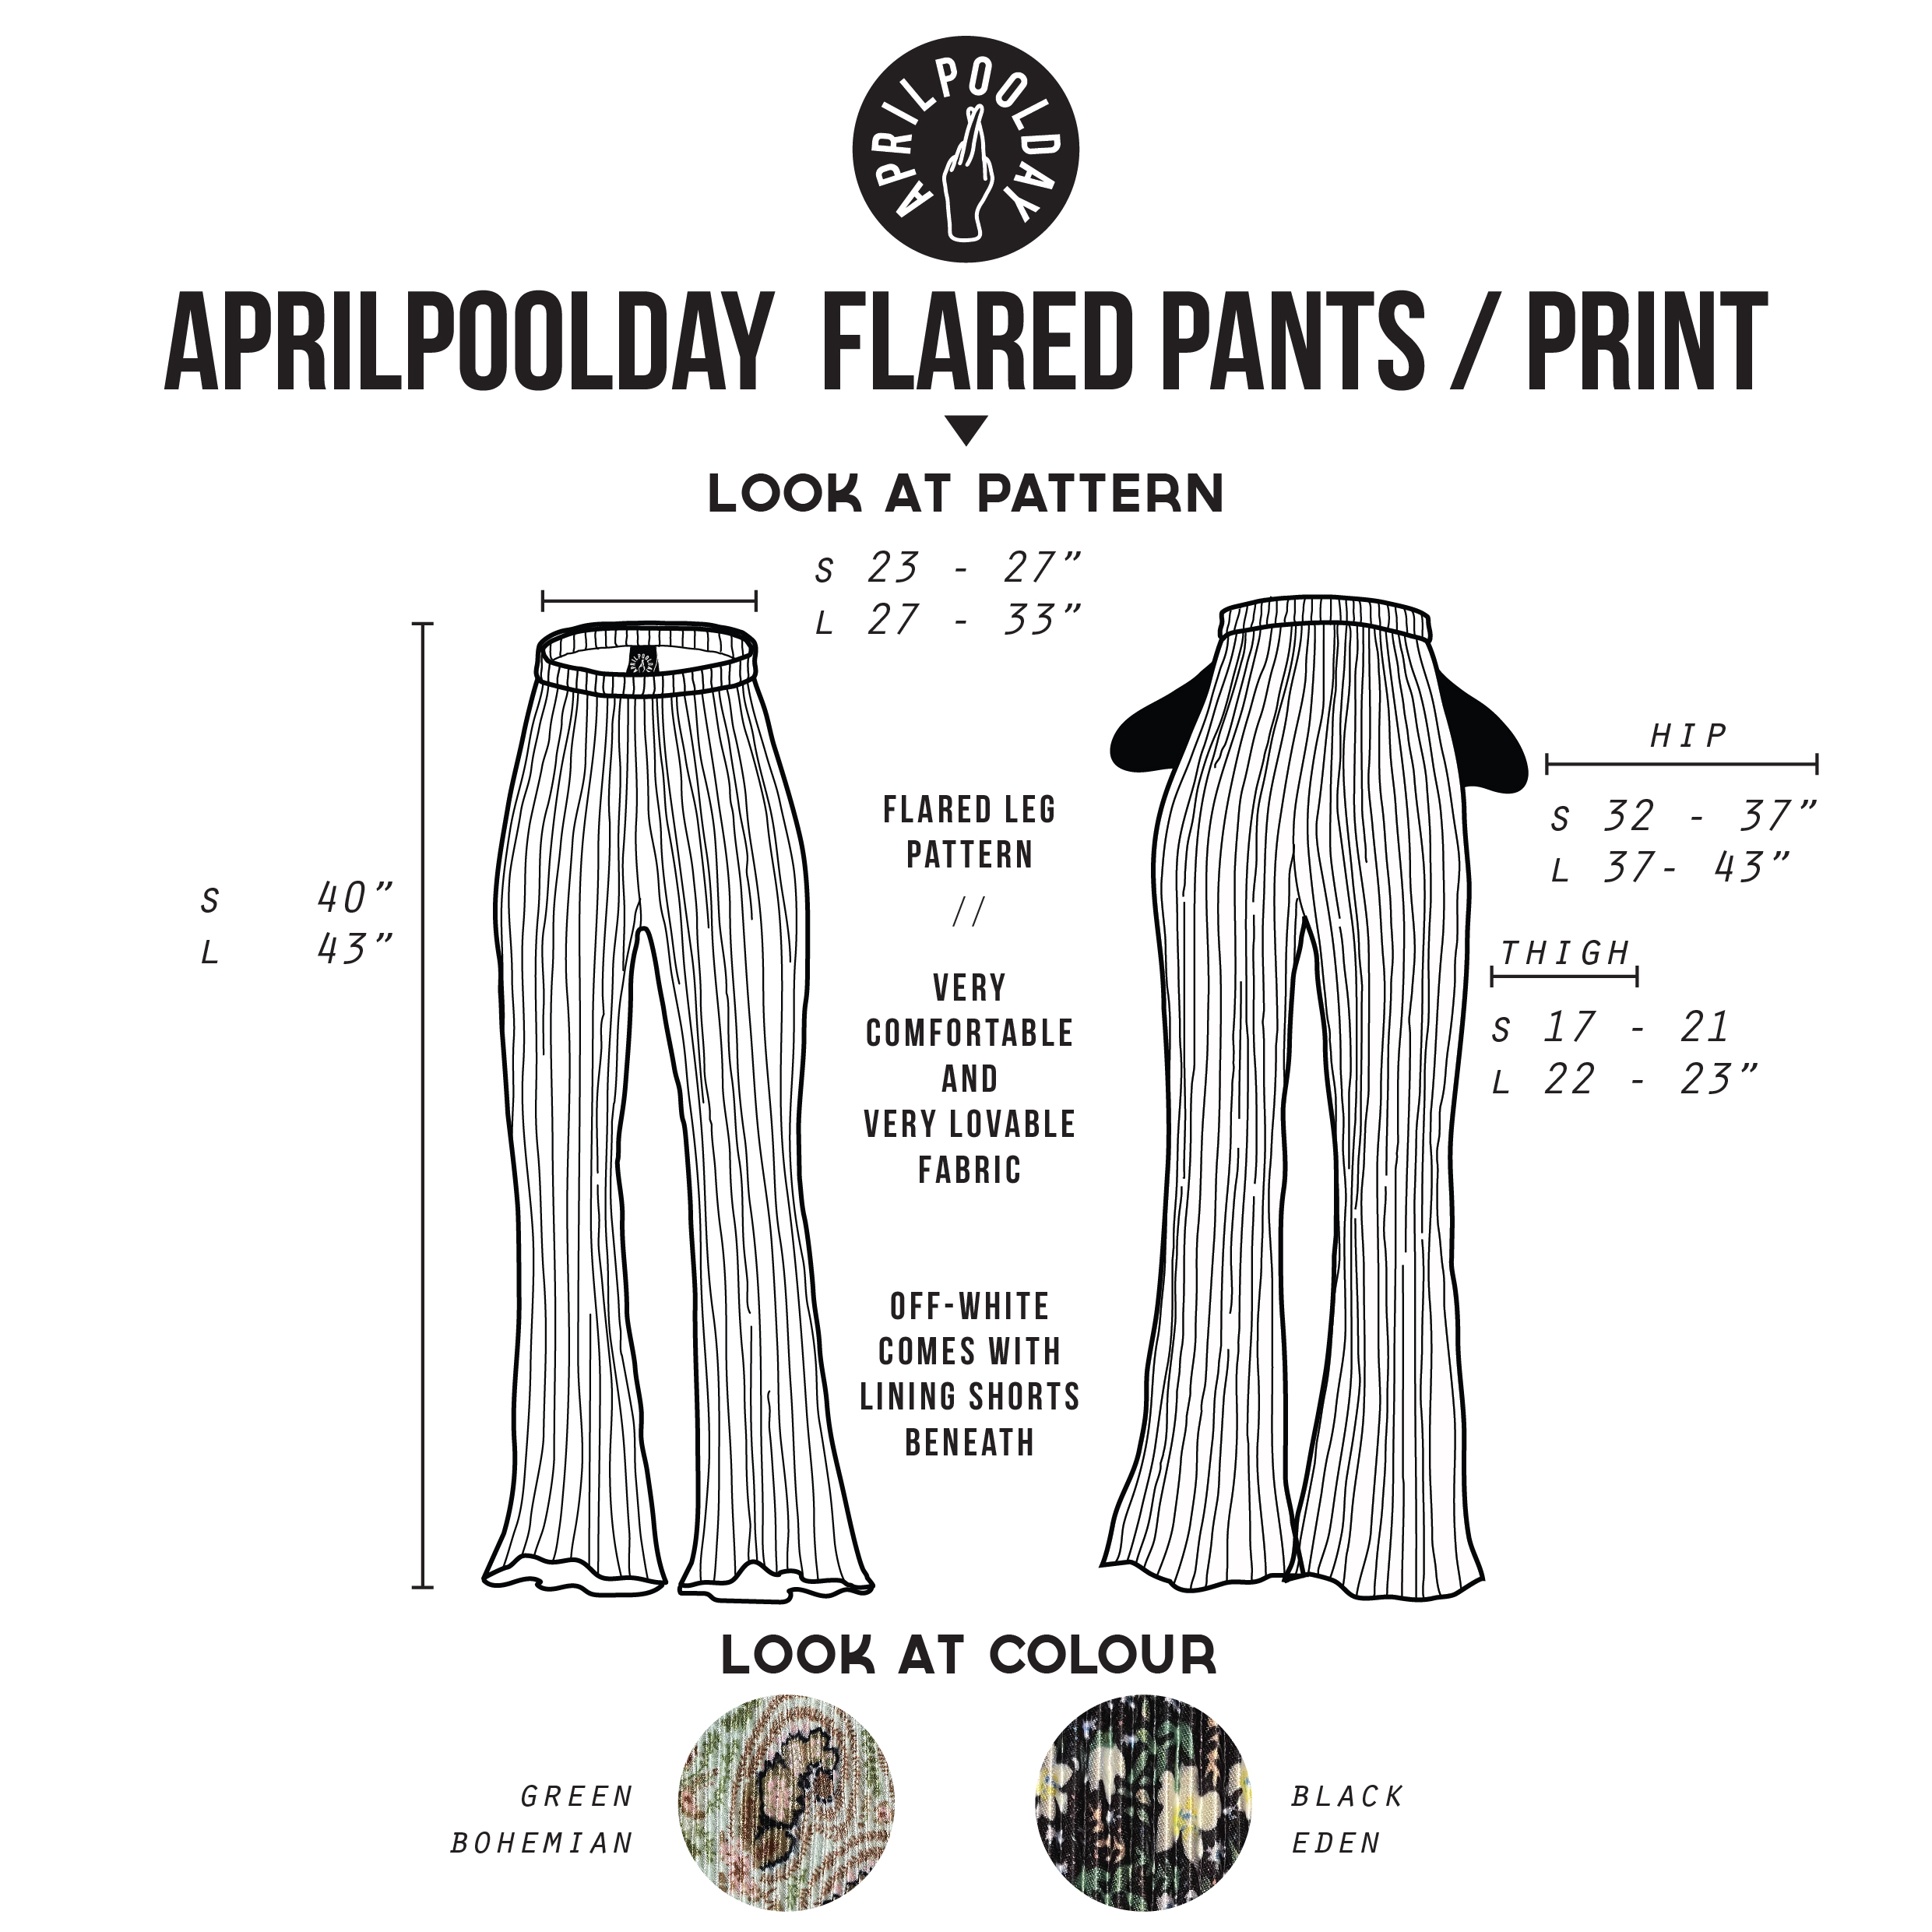 ข้อมูลเกี่ยวกับ APRILPOOLDAY FLARED PANTS PRINT